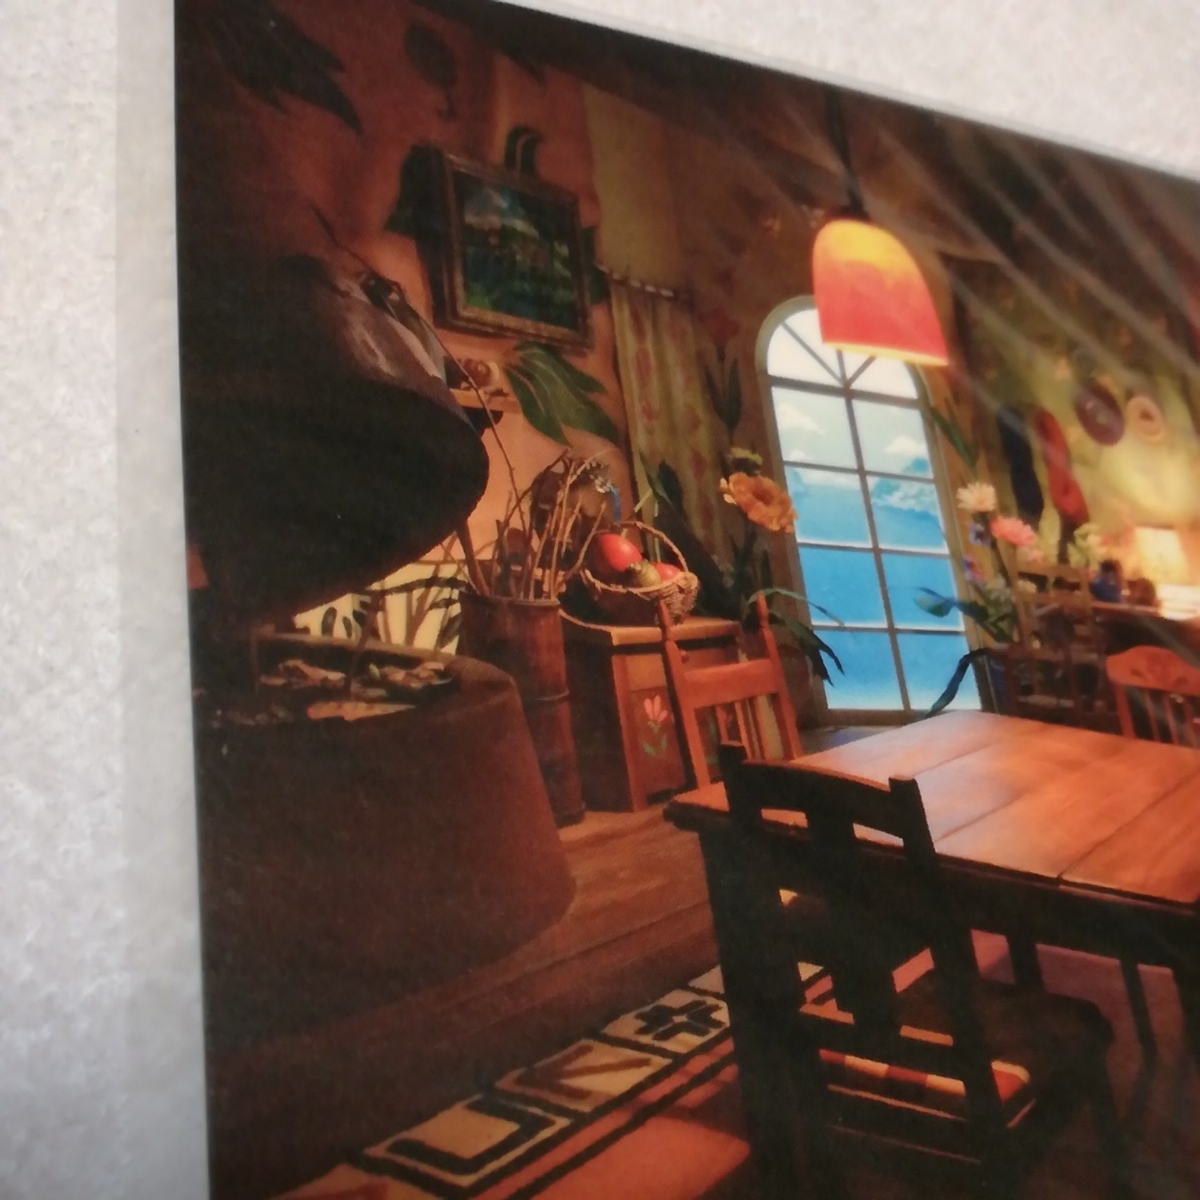  трудно найти!! Studio Ghibli ...... есть eti[ Event ограничение ] открытка Miyazaki . вид рисовое поле Youhei расположение выставка. карта. рис ...e